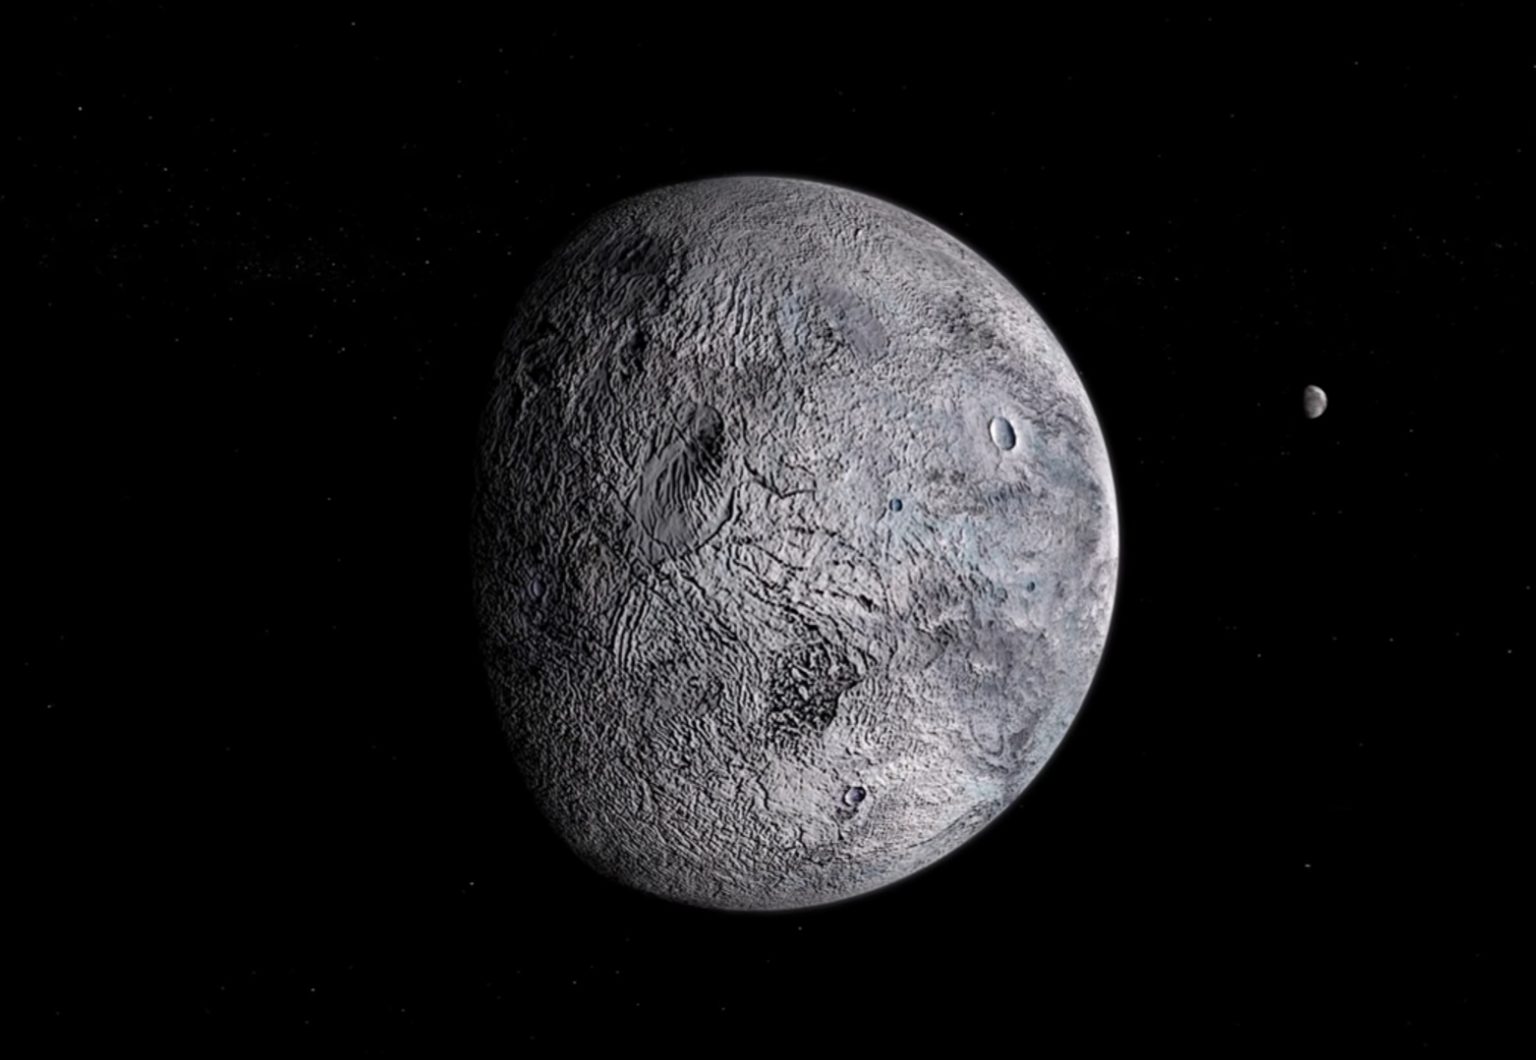 Карликовая планета эрида фото